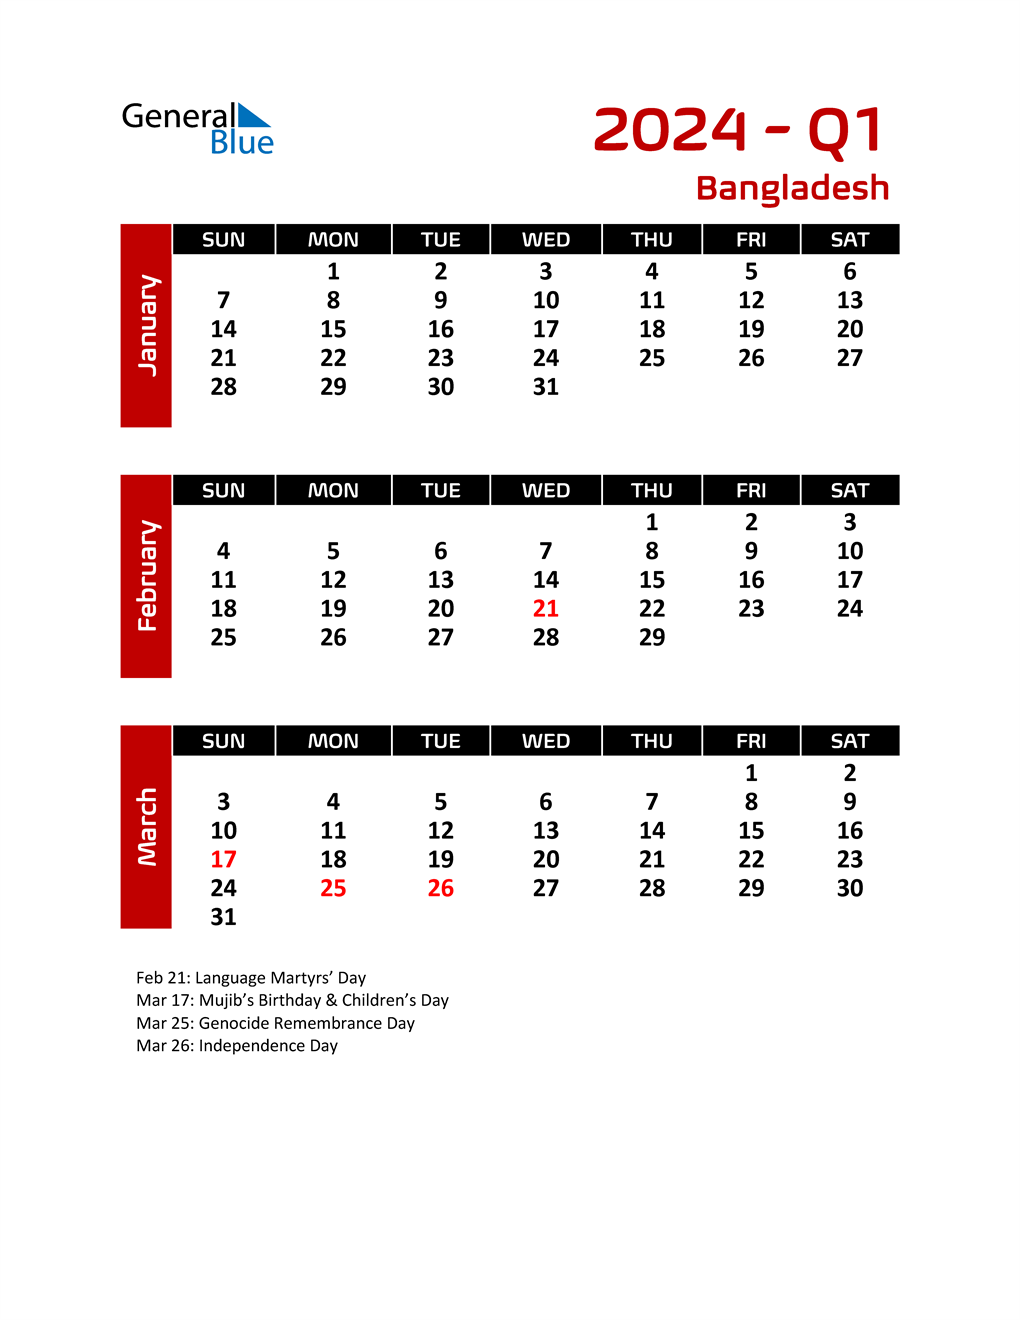 Q1 2024 Quarterly Calendar with Bangladesh Holidays